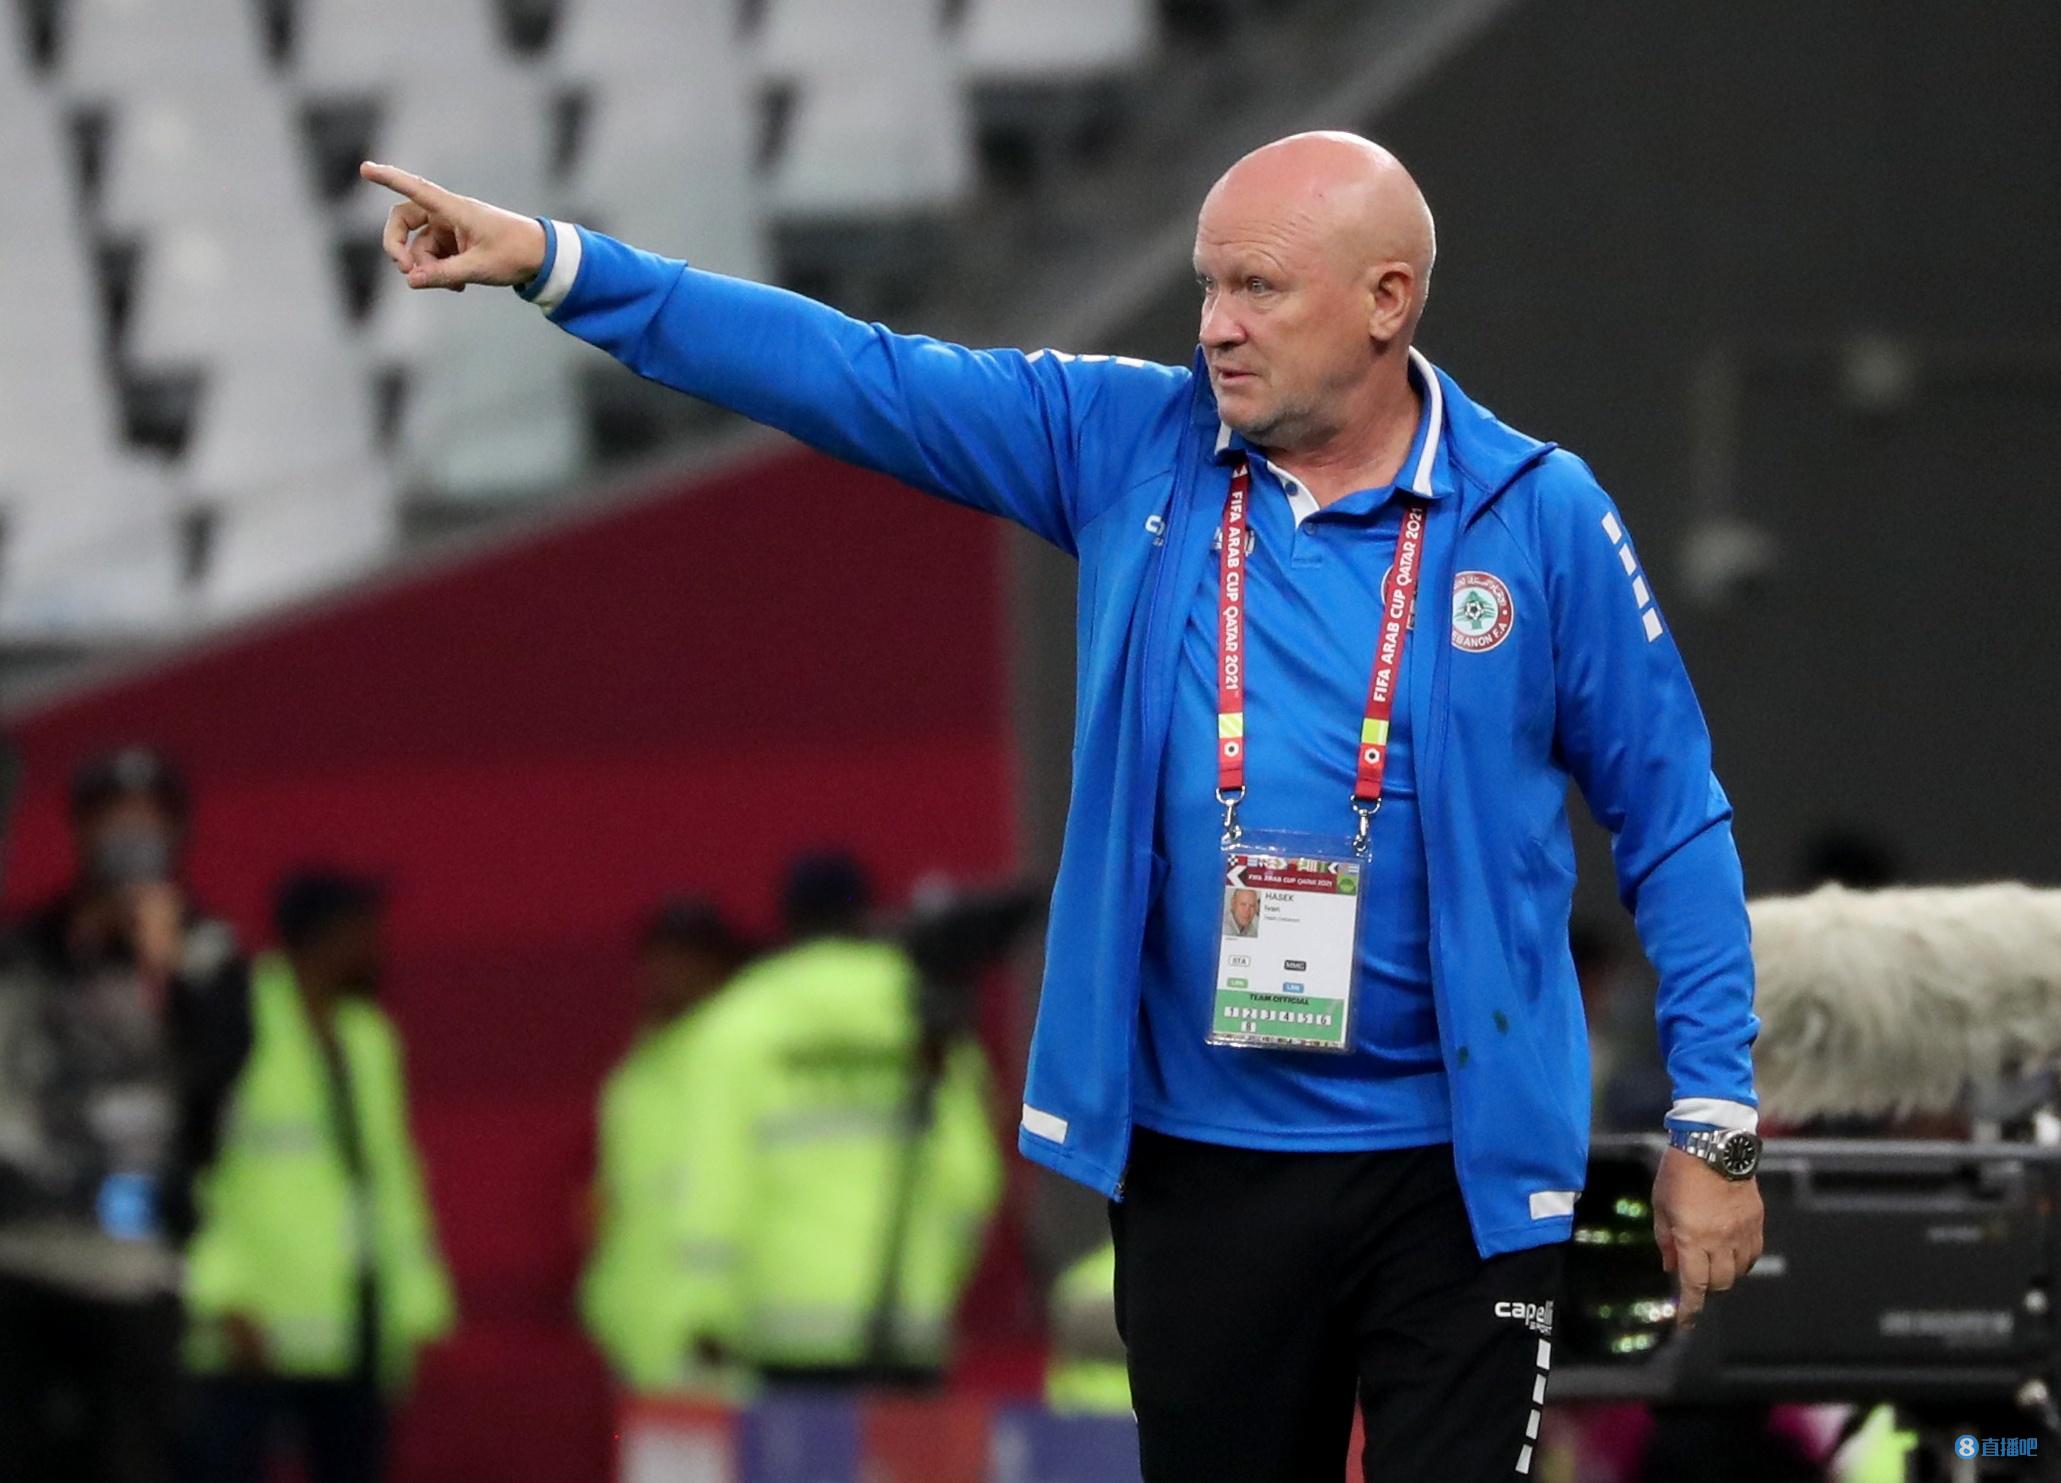 60岁的捷克足球传奇人物伊万·哈谢克成为捷克国家队新任主教练。